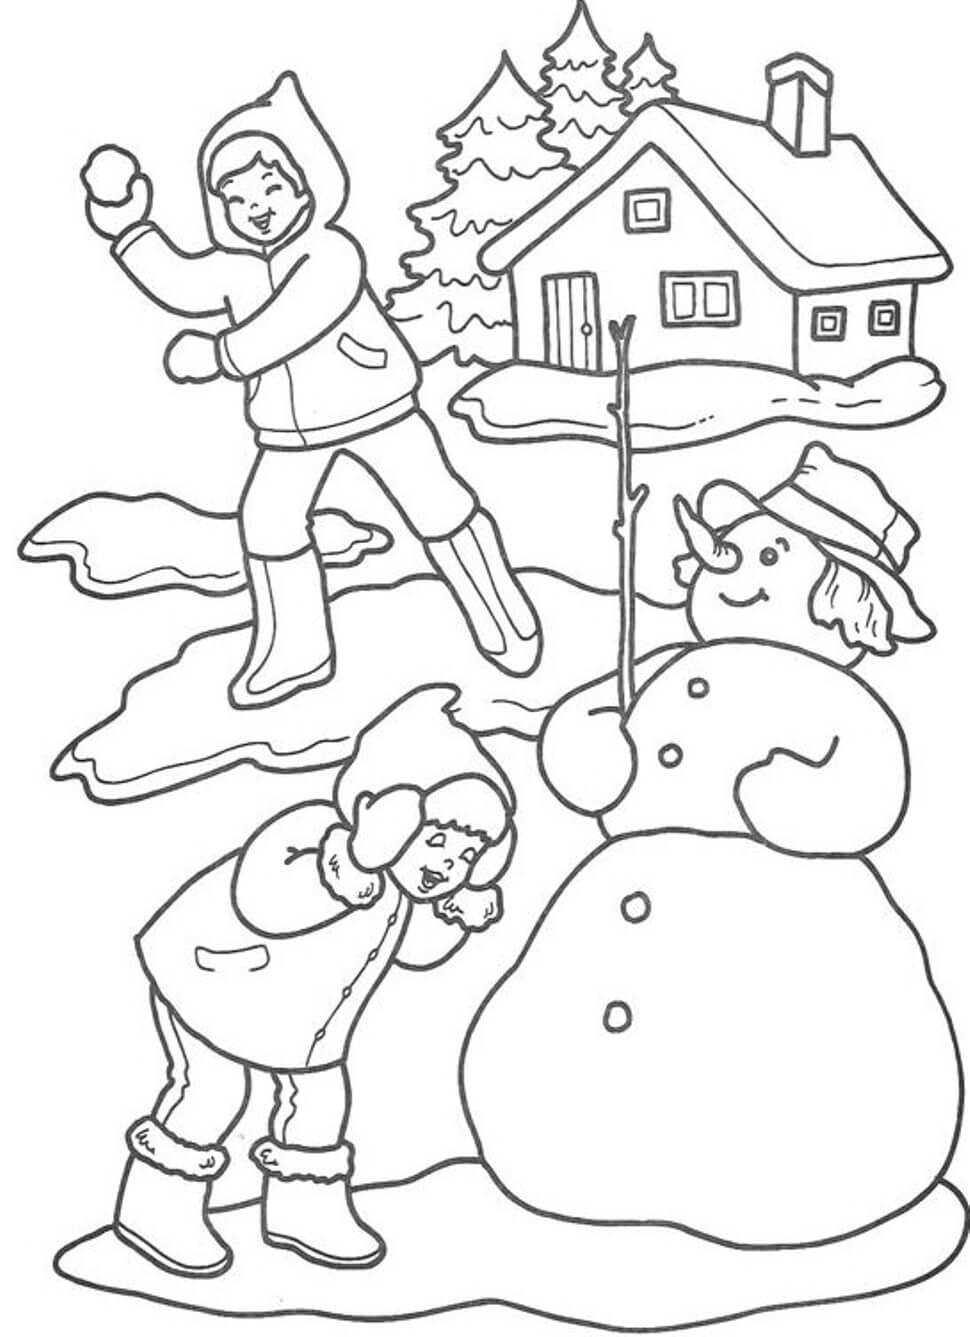 Zwei Kinder werfen im Winter Schnee und einen Schneemann